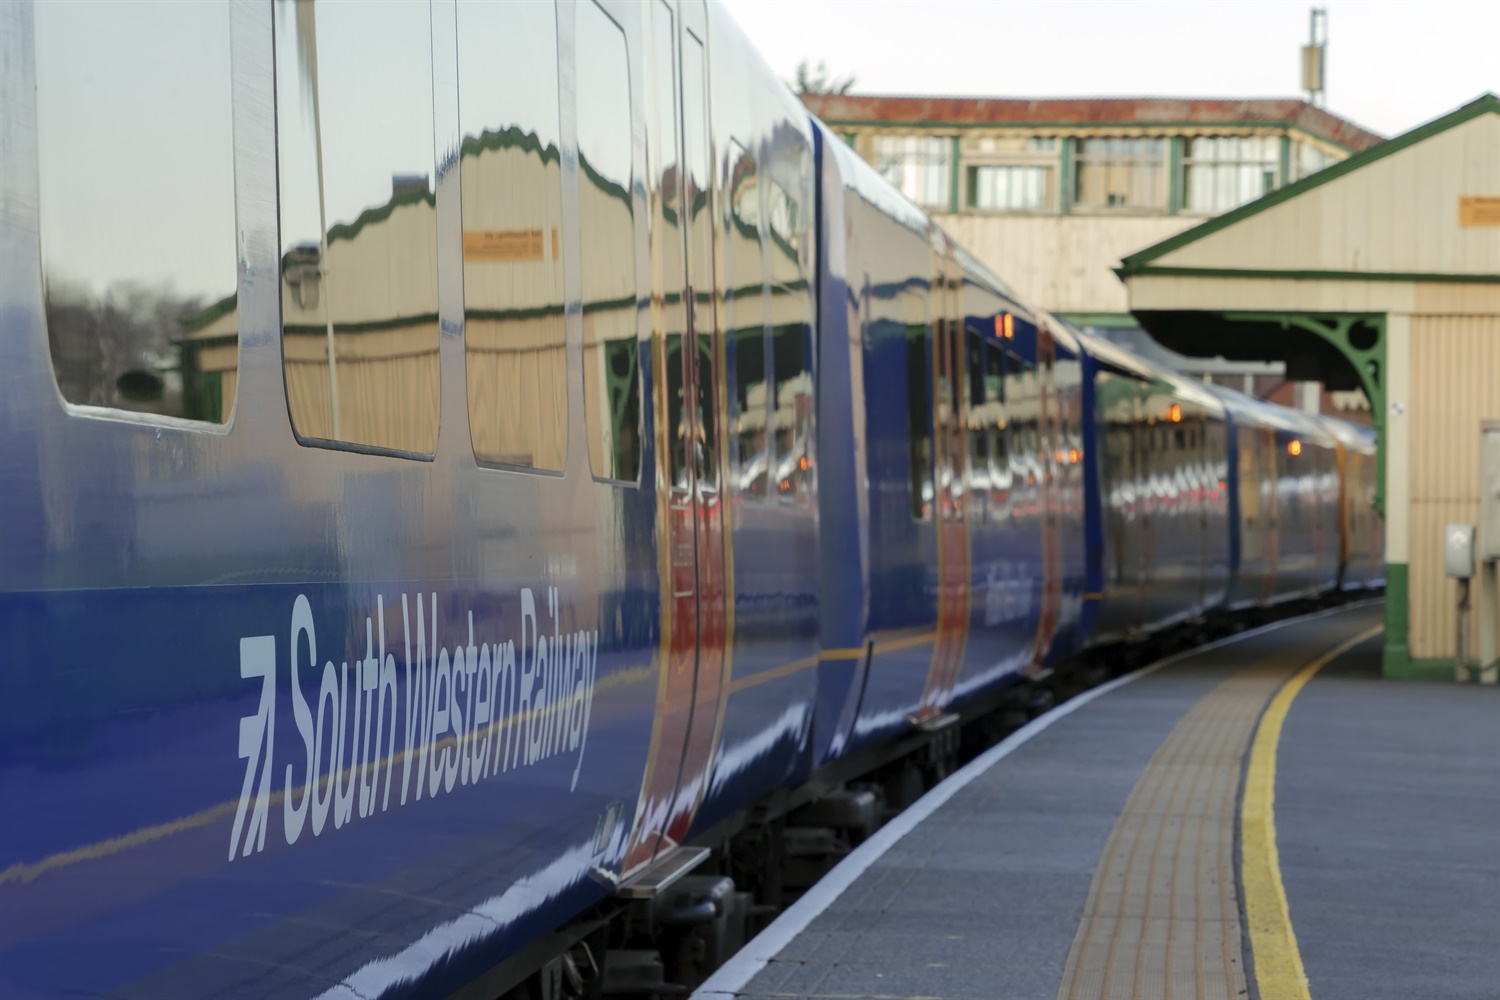 DfT statement on South Western Railway 